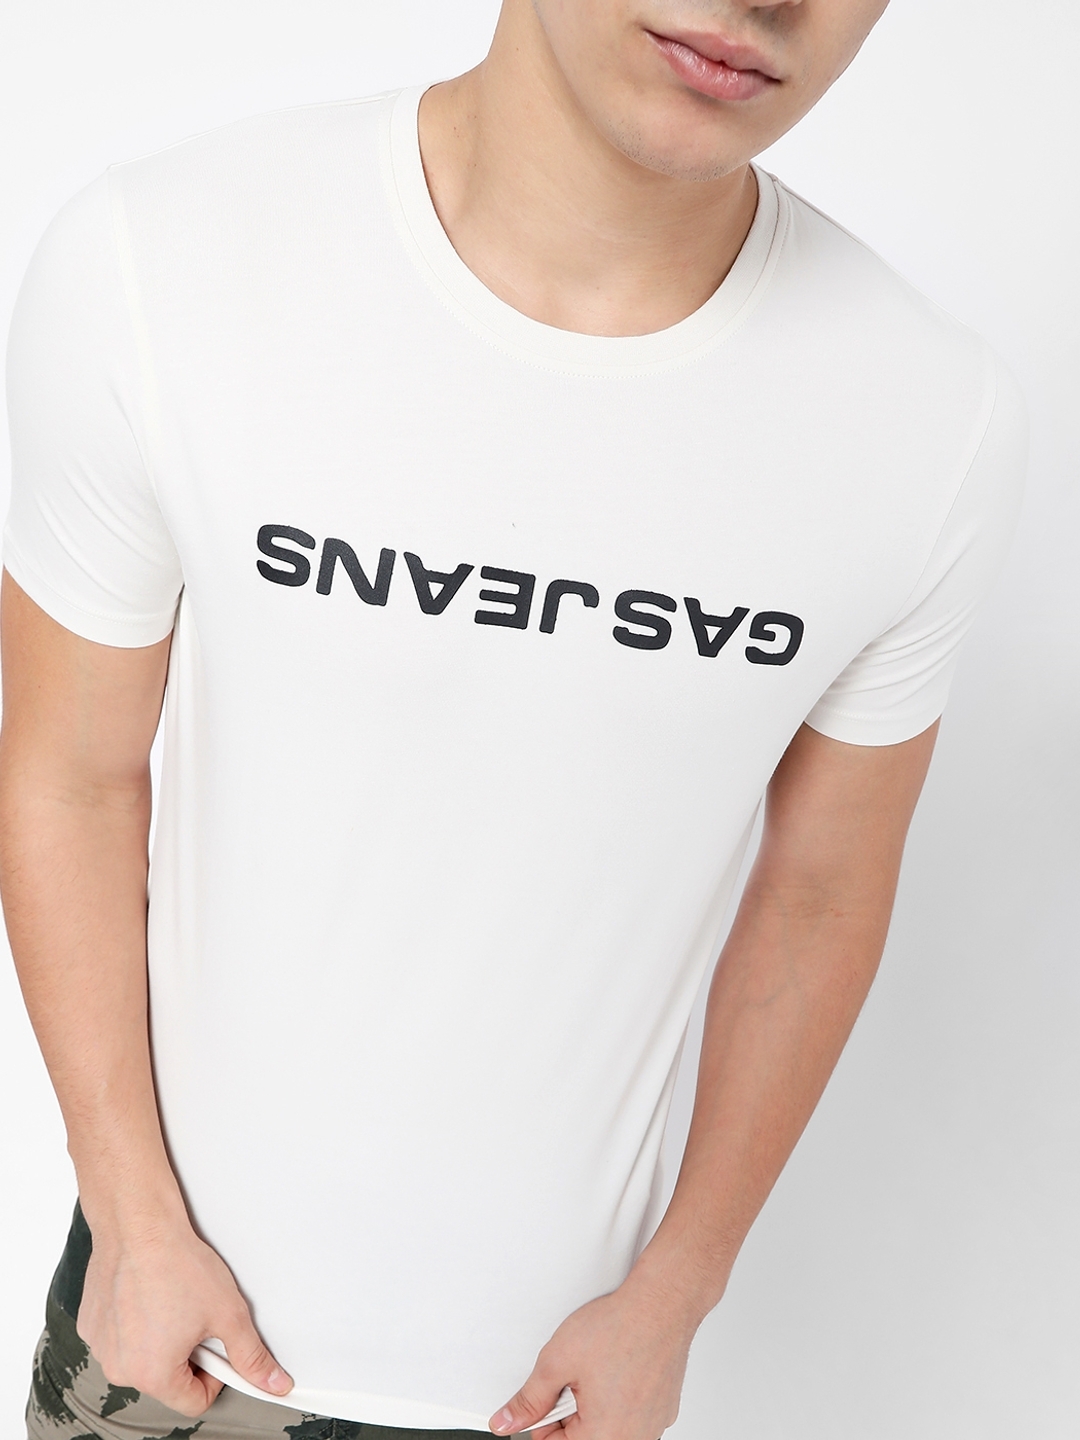 Scuba Reverse Slim Fit Crew-Neck T-shirt